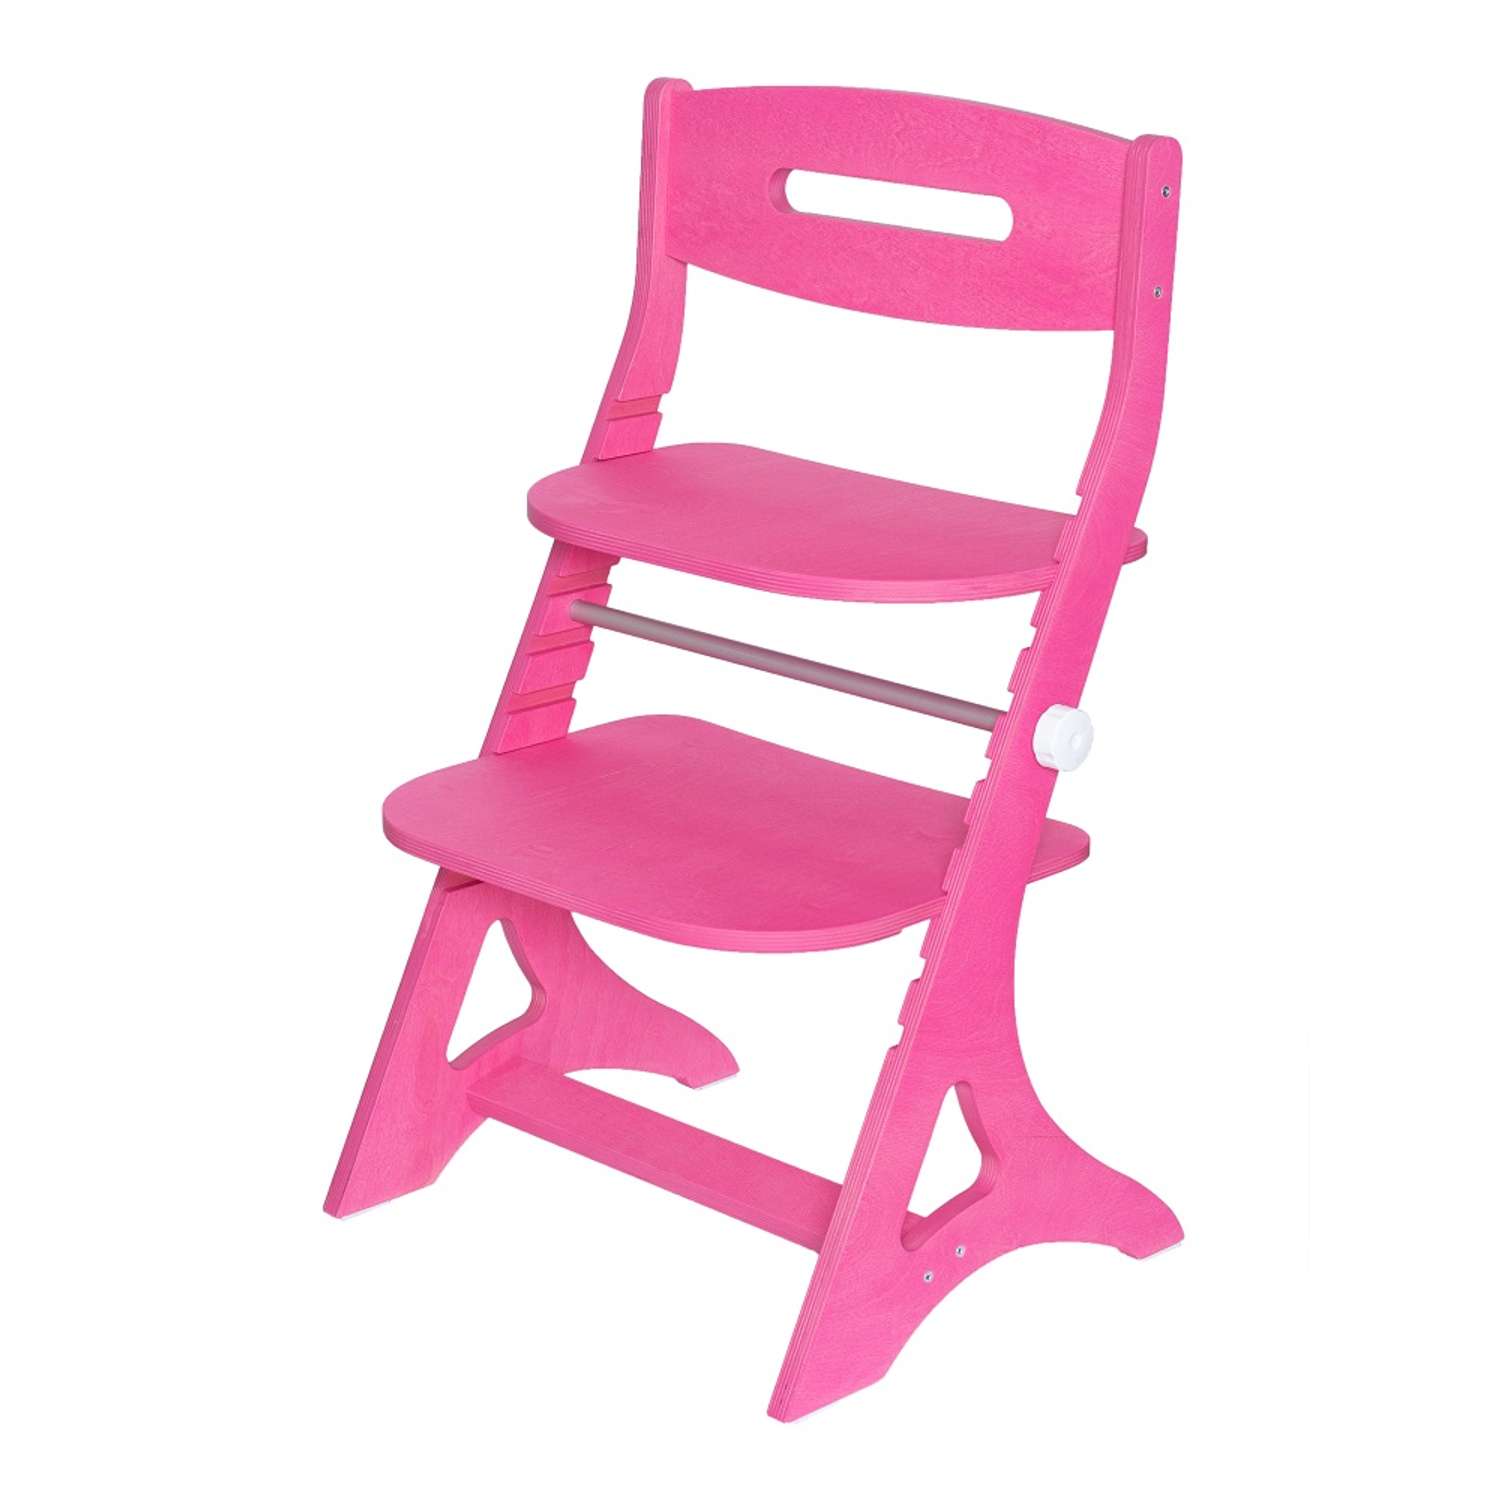 Растущий регулируемый стул INDSPACE детский Мультик Розовый дерево - фото 19